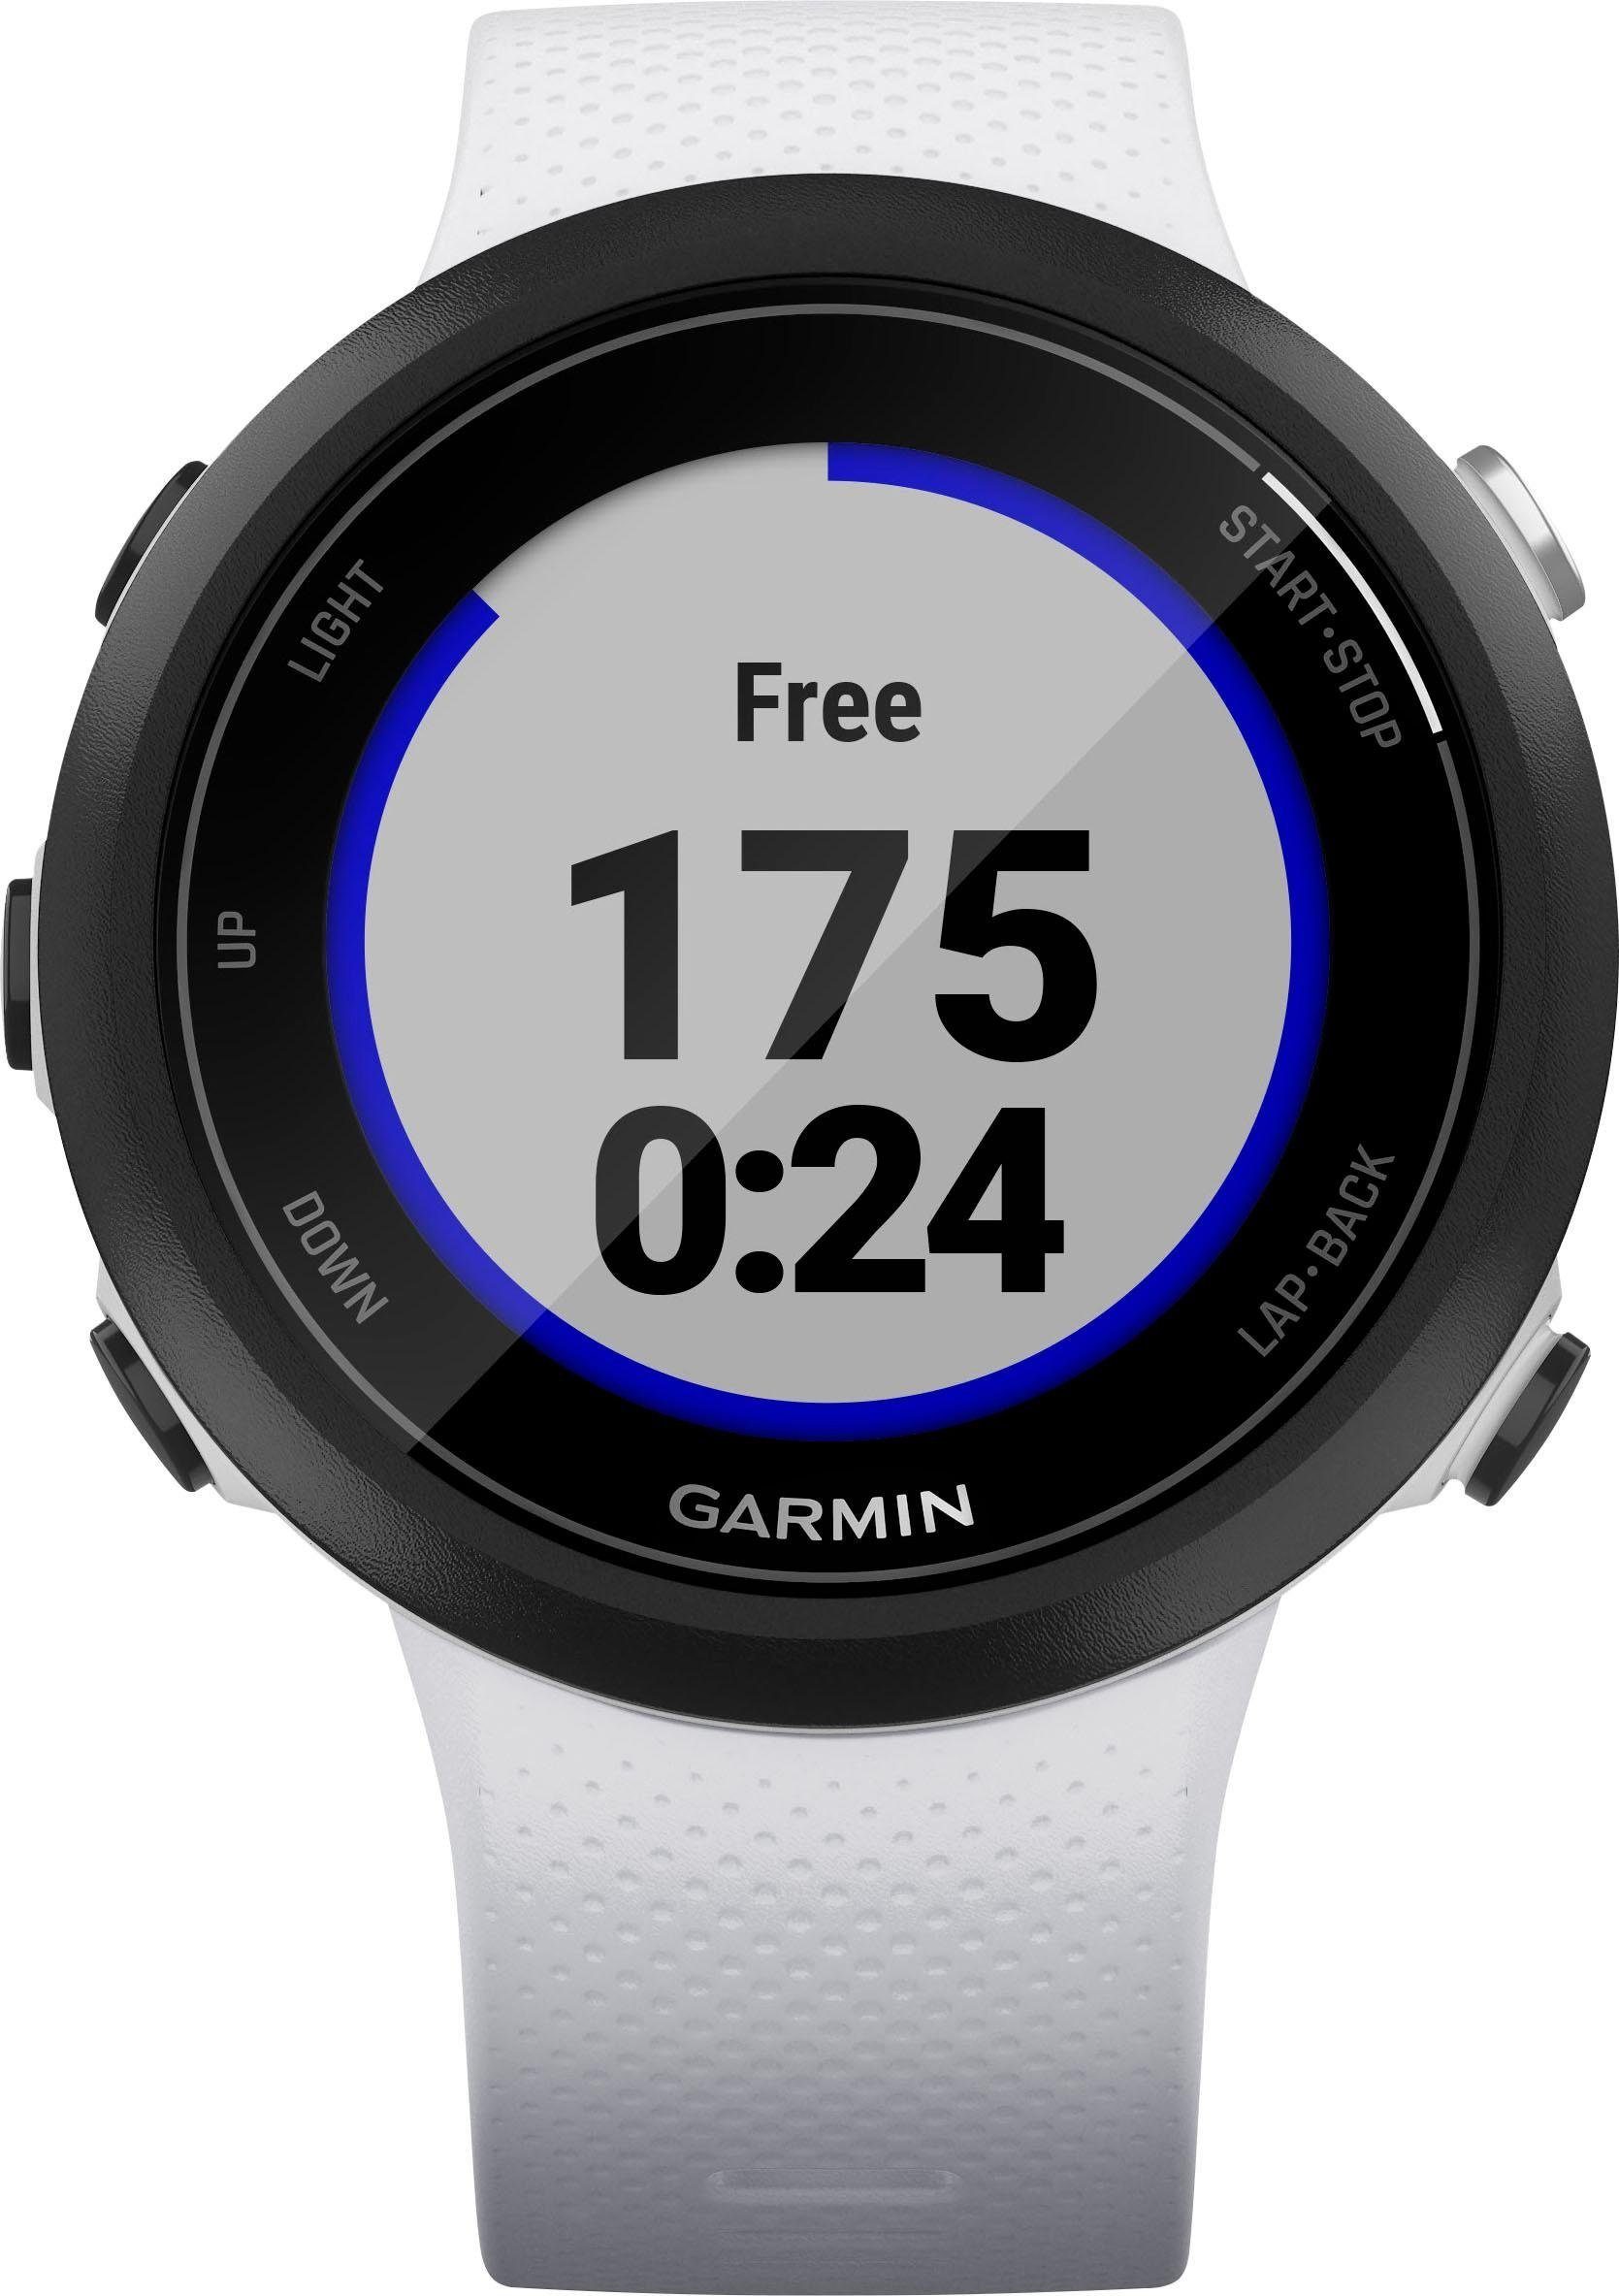 weiß 20 Swim2 Garmin Zoll) Smartwatch cm/1,04 Silikon-Armband mit (2,63 mm